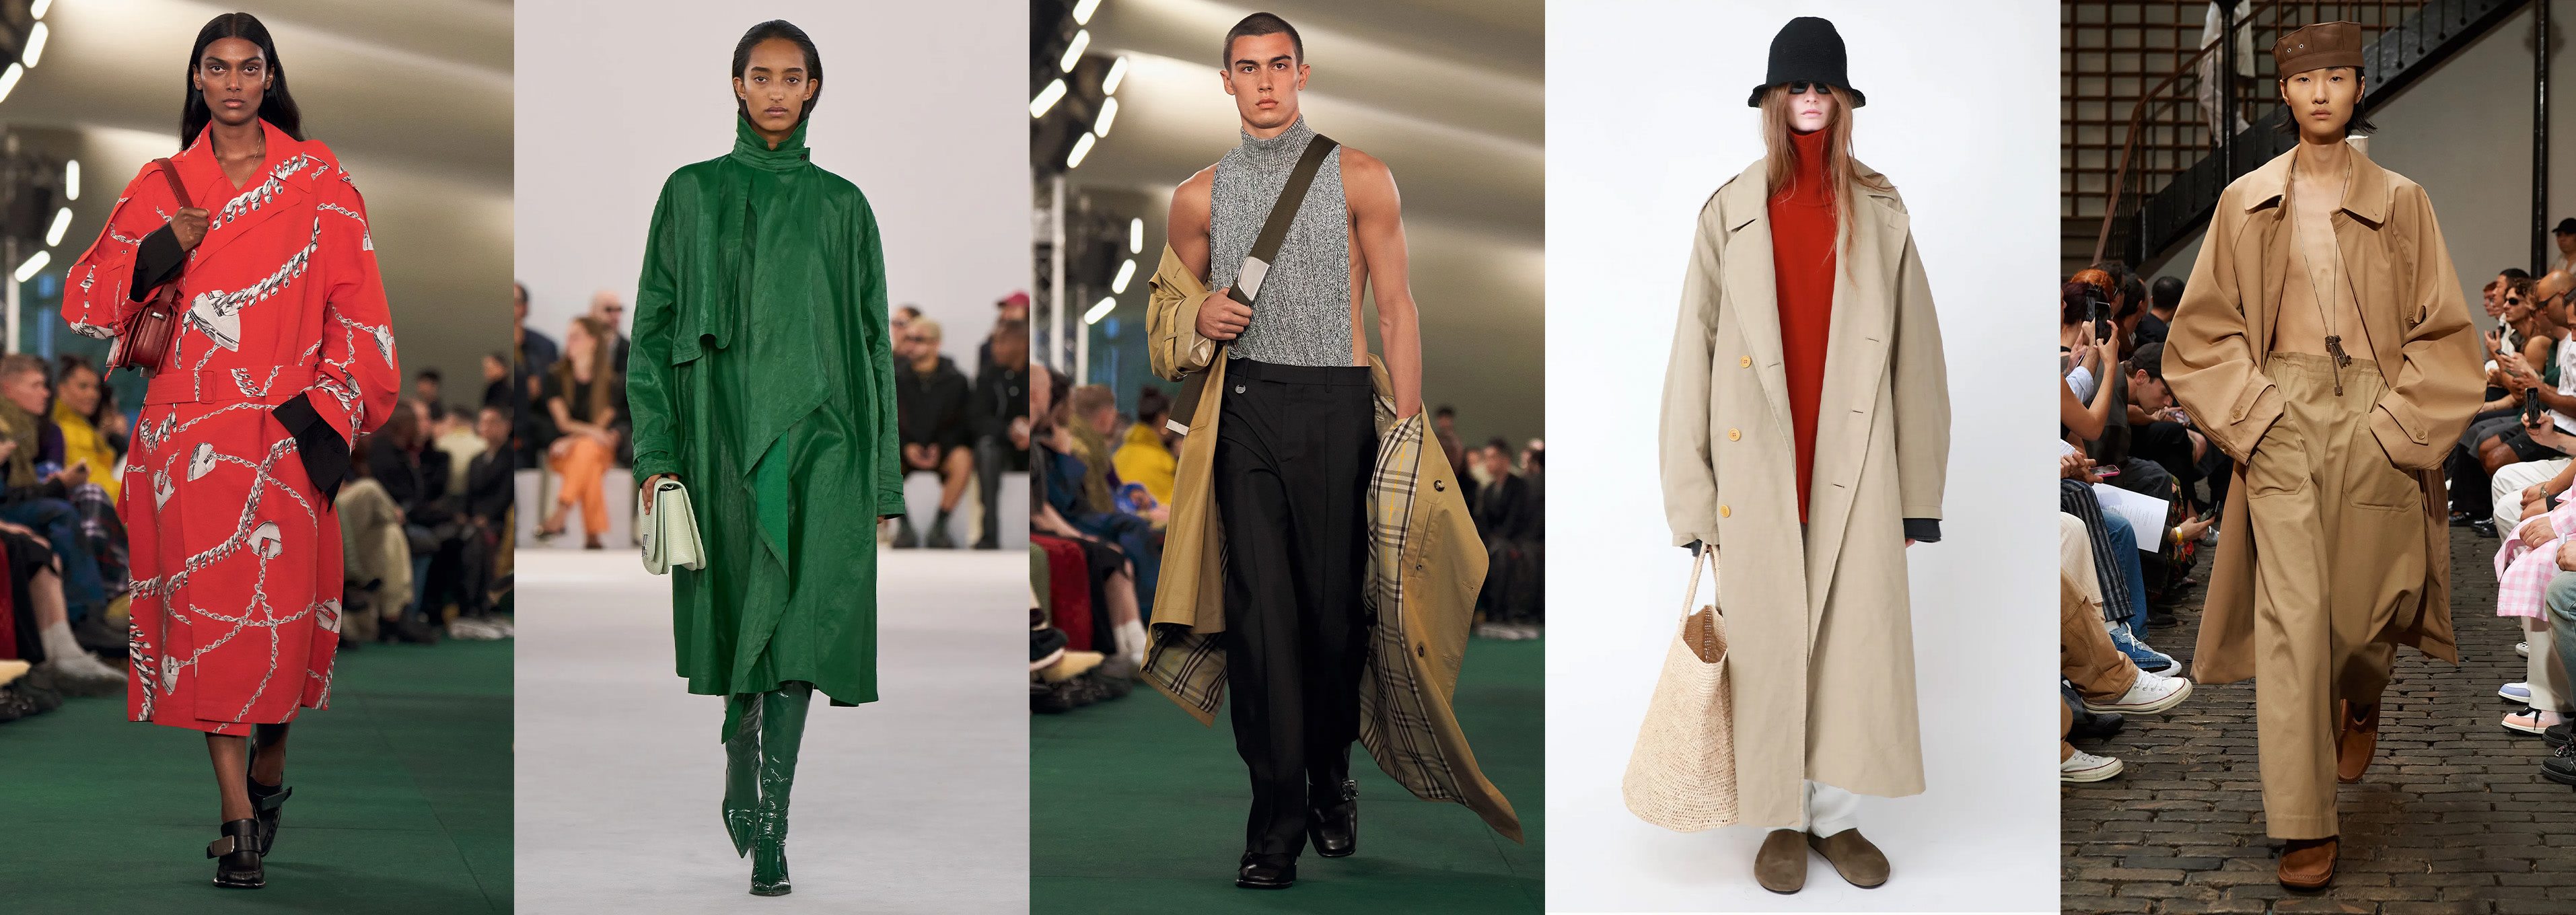 Trenchcoat-Trends: So tragen wir den Modeklassiker jetzt